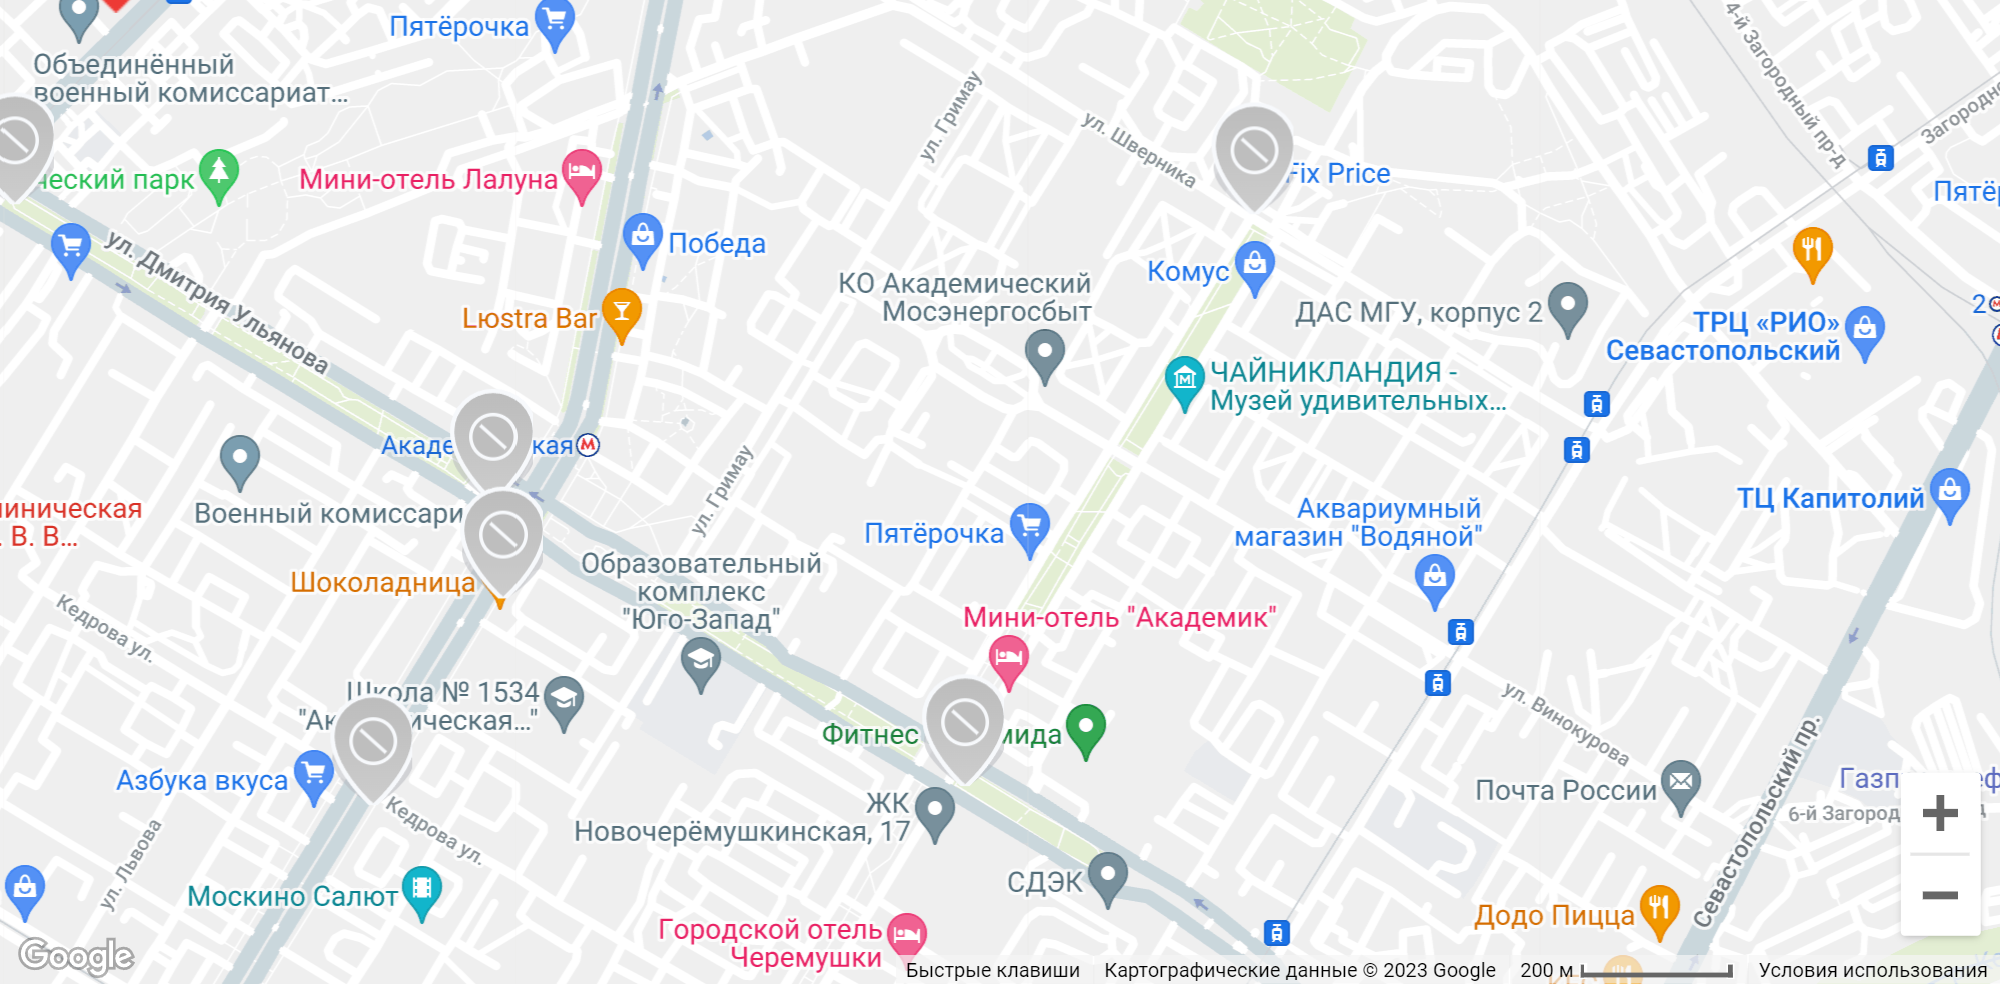 Карта станций велопроката. Источник: velobike.ru